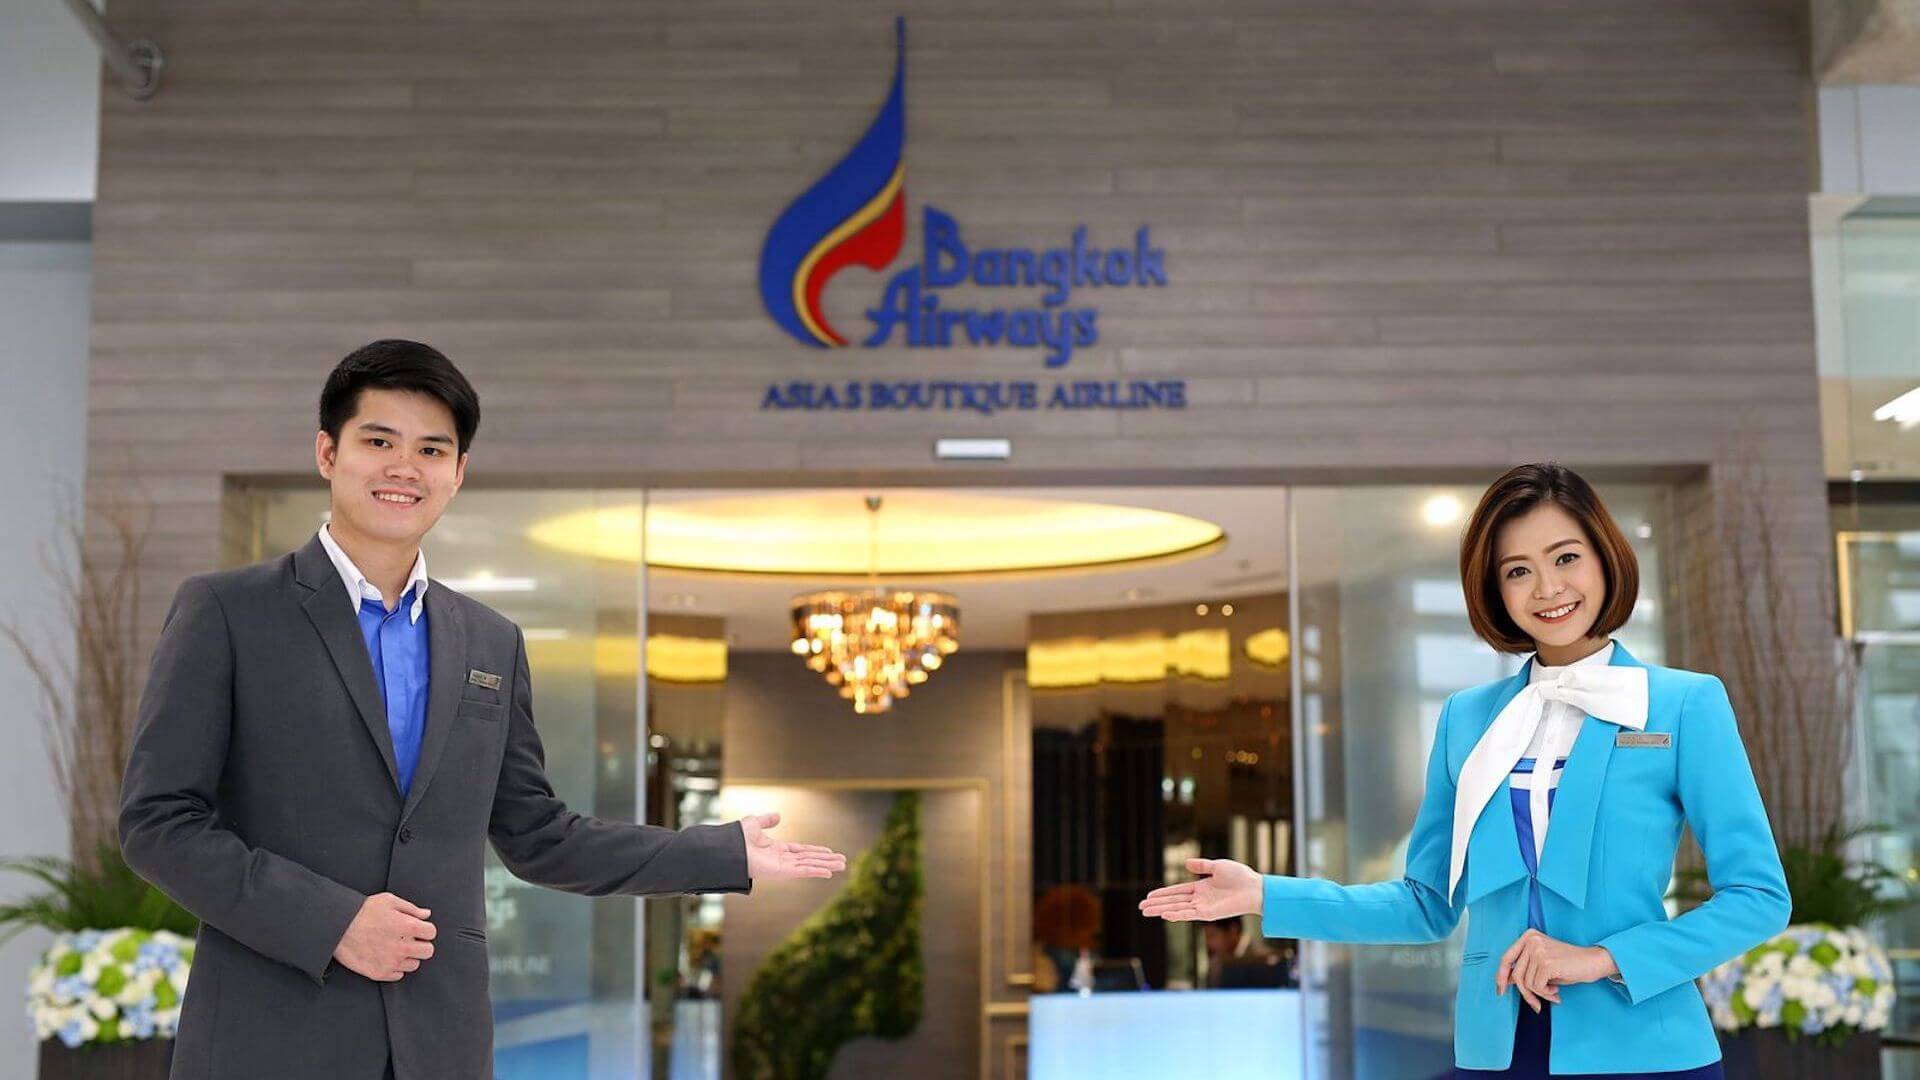 Bangkok Airways Blue Ribbon Lounge Bangkok Test